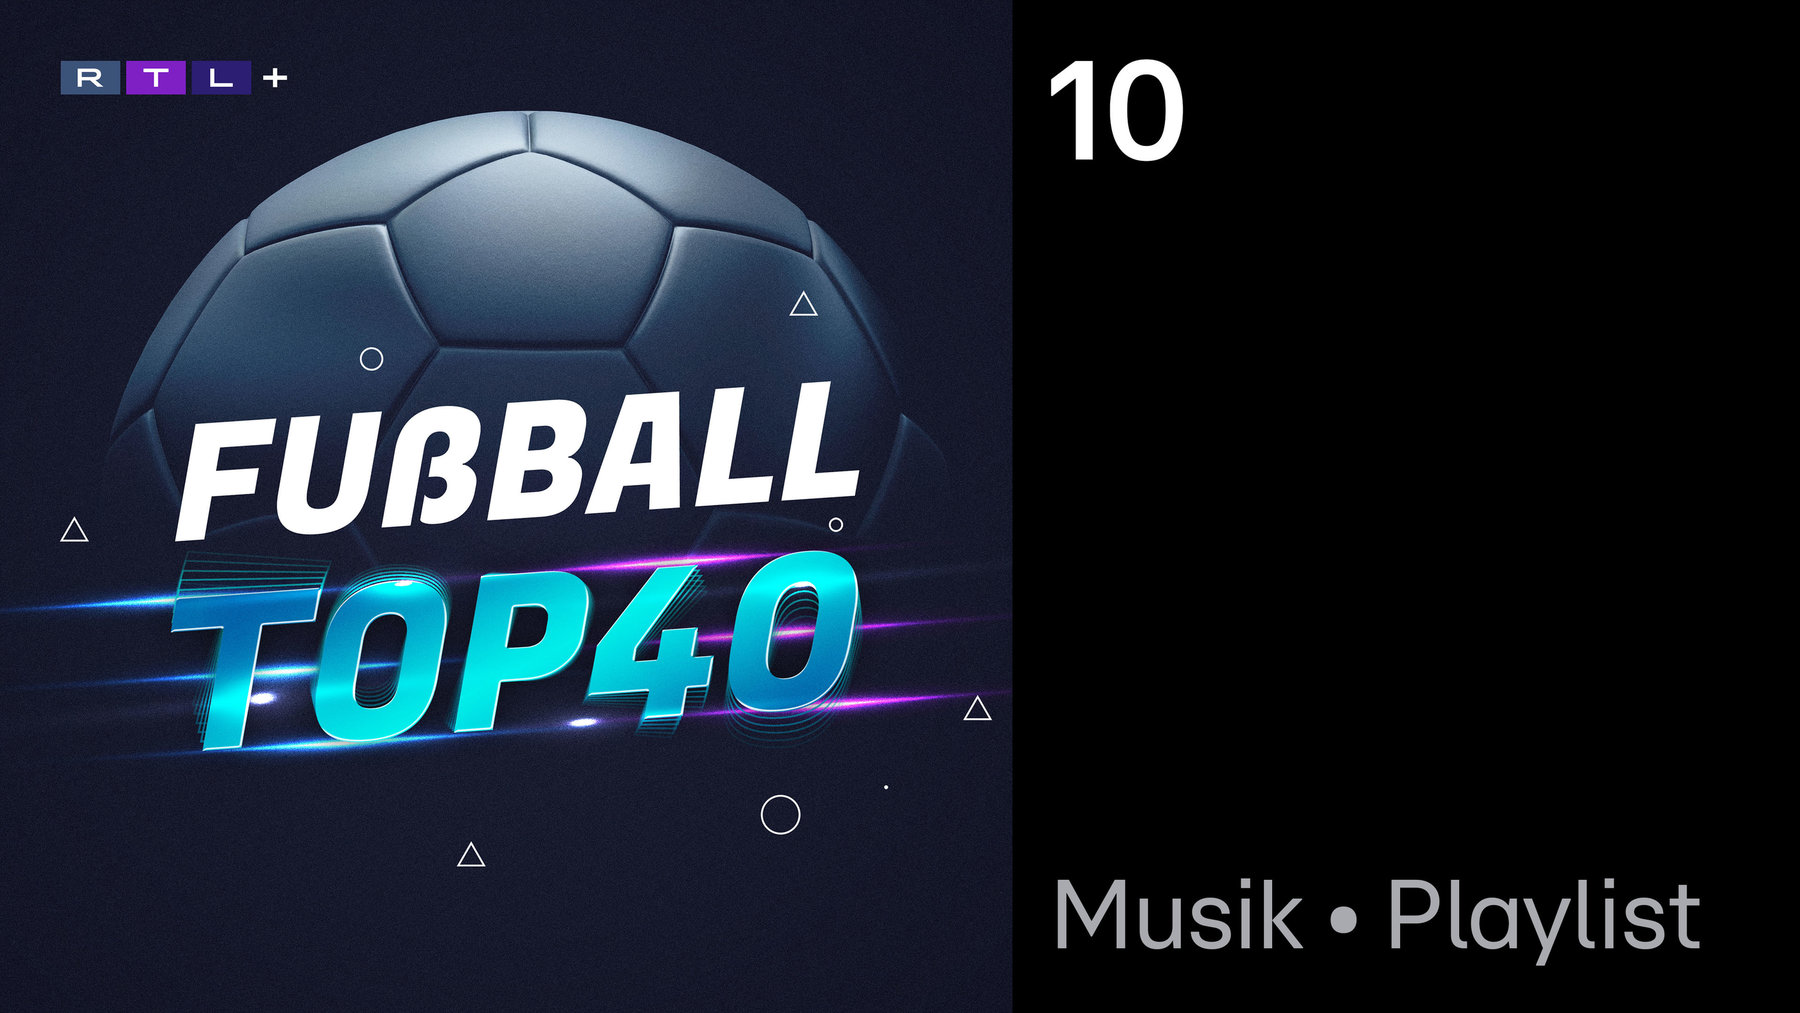 Fußball Top 40